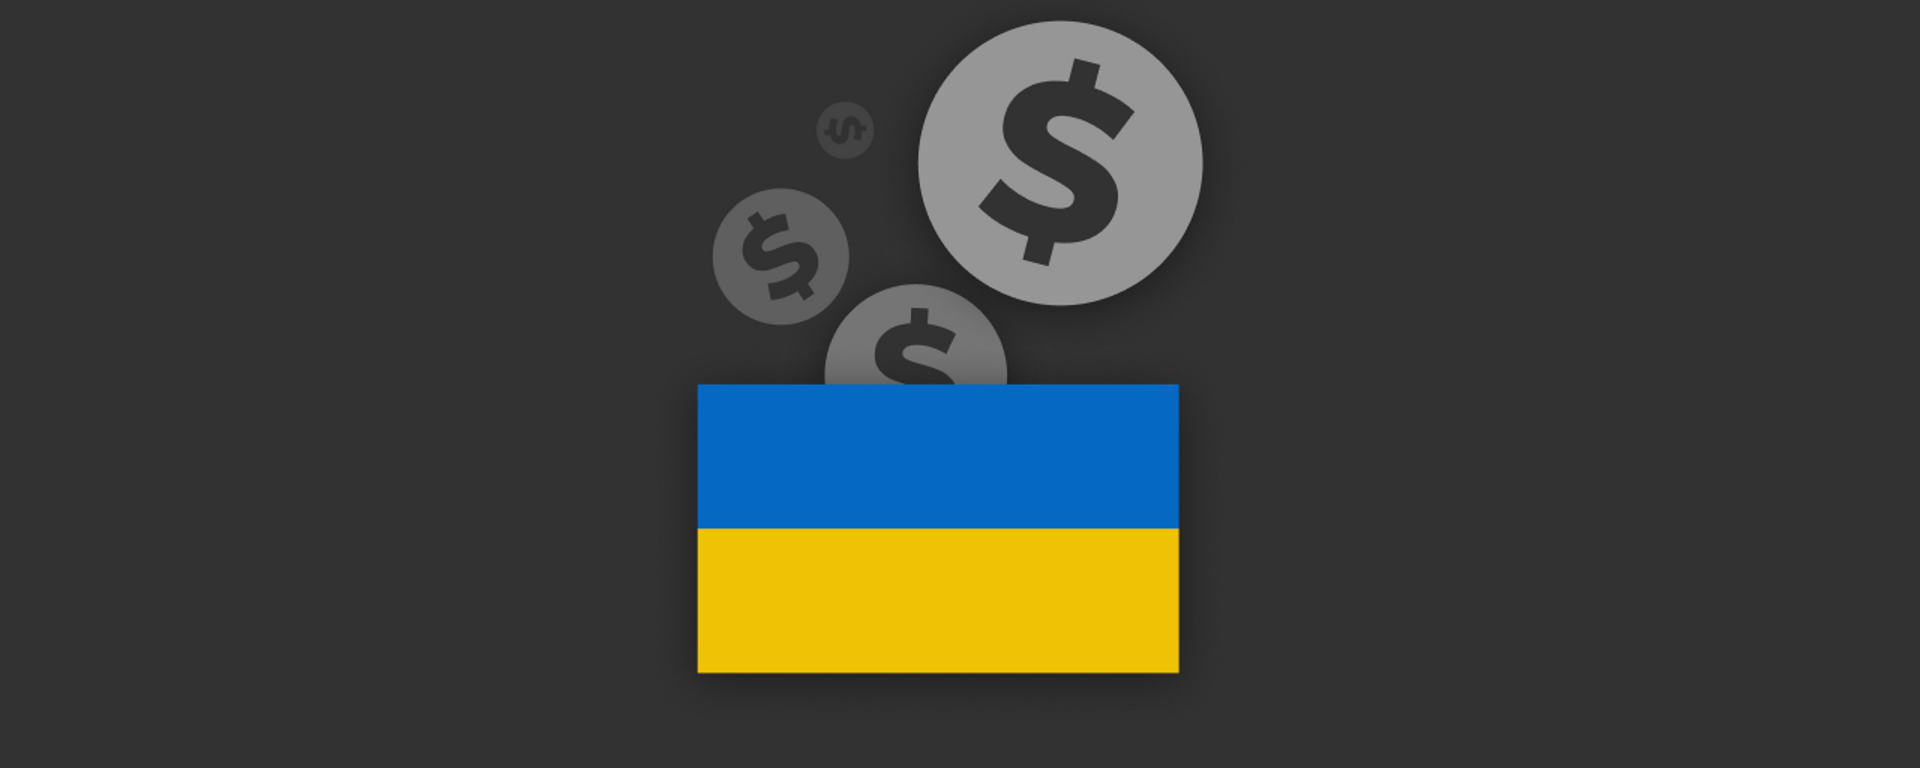 ¿Cuánto dinero asignó USAID a Ucrania en 2022?  - Sputnik Mundo, 1920, 20.01.2023